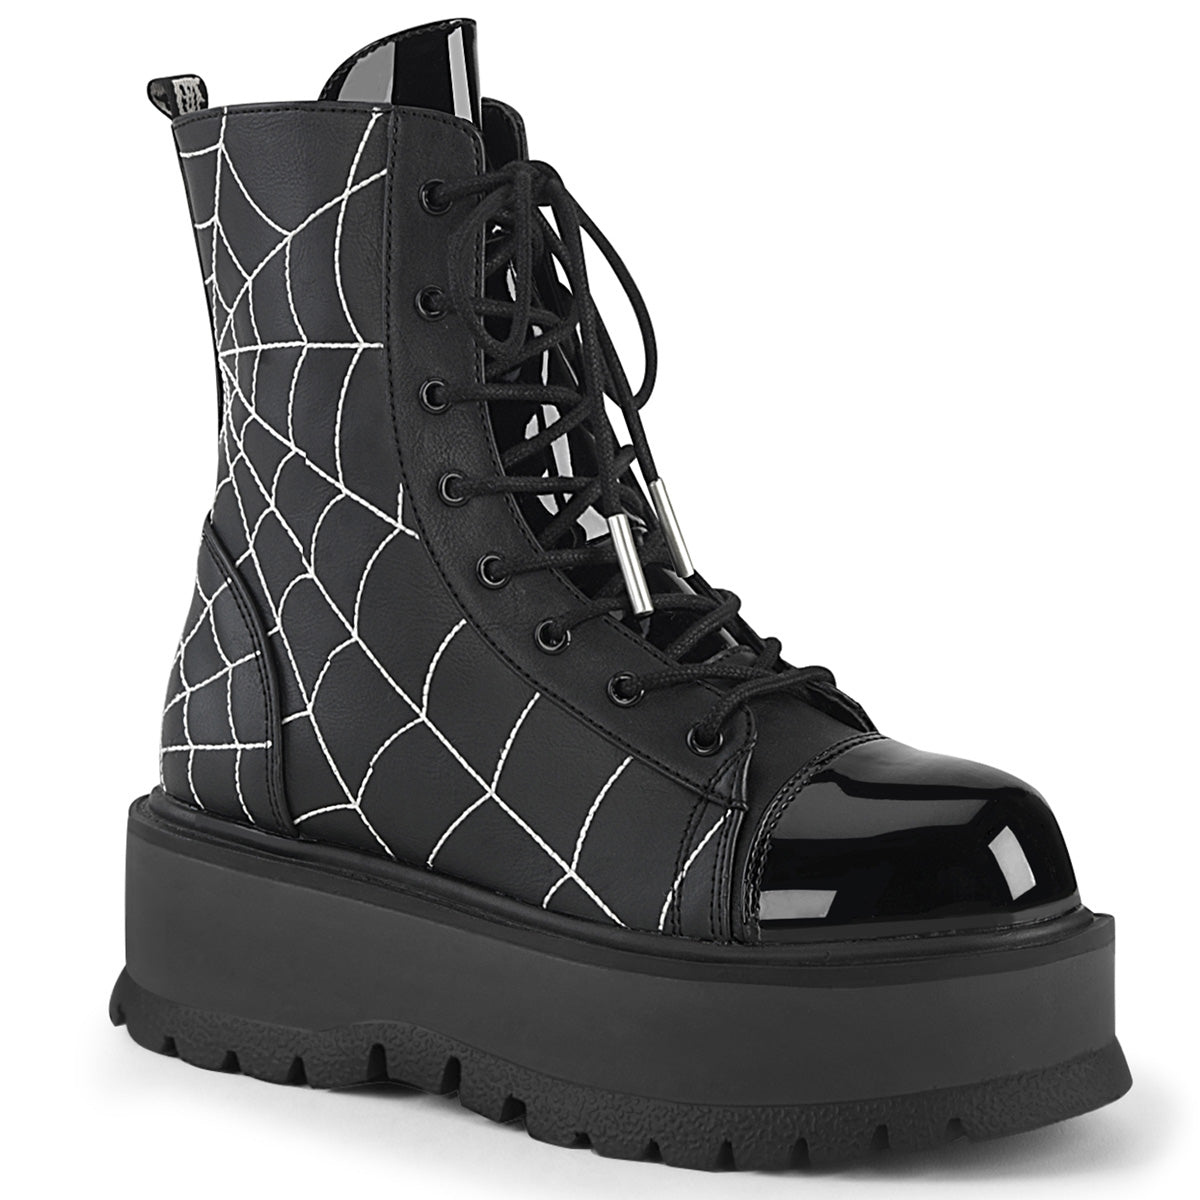 SLACKER-88 Spiderweb Boots by Demonia